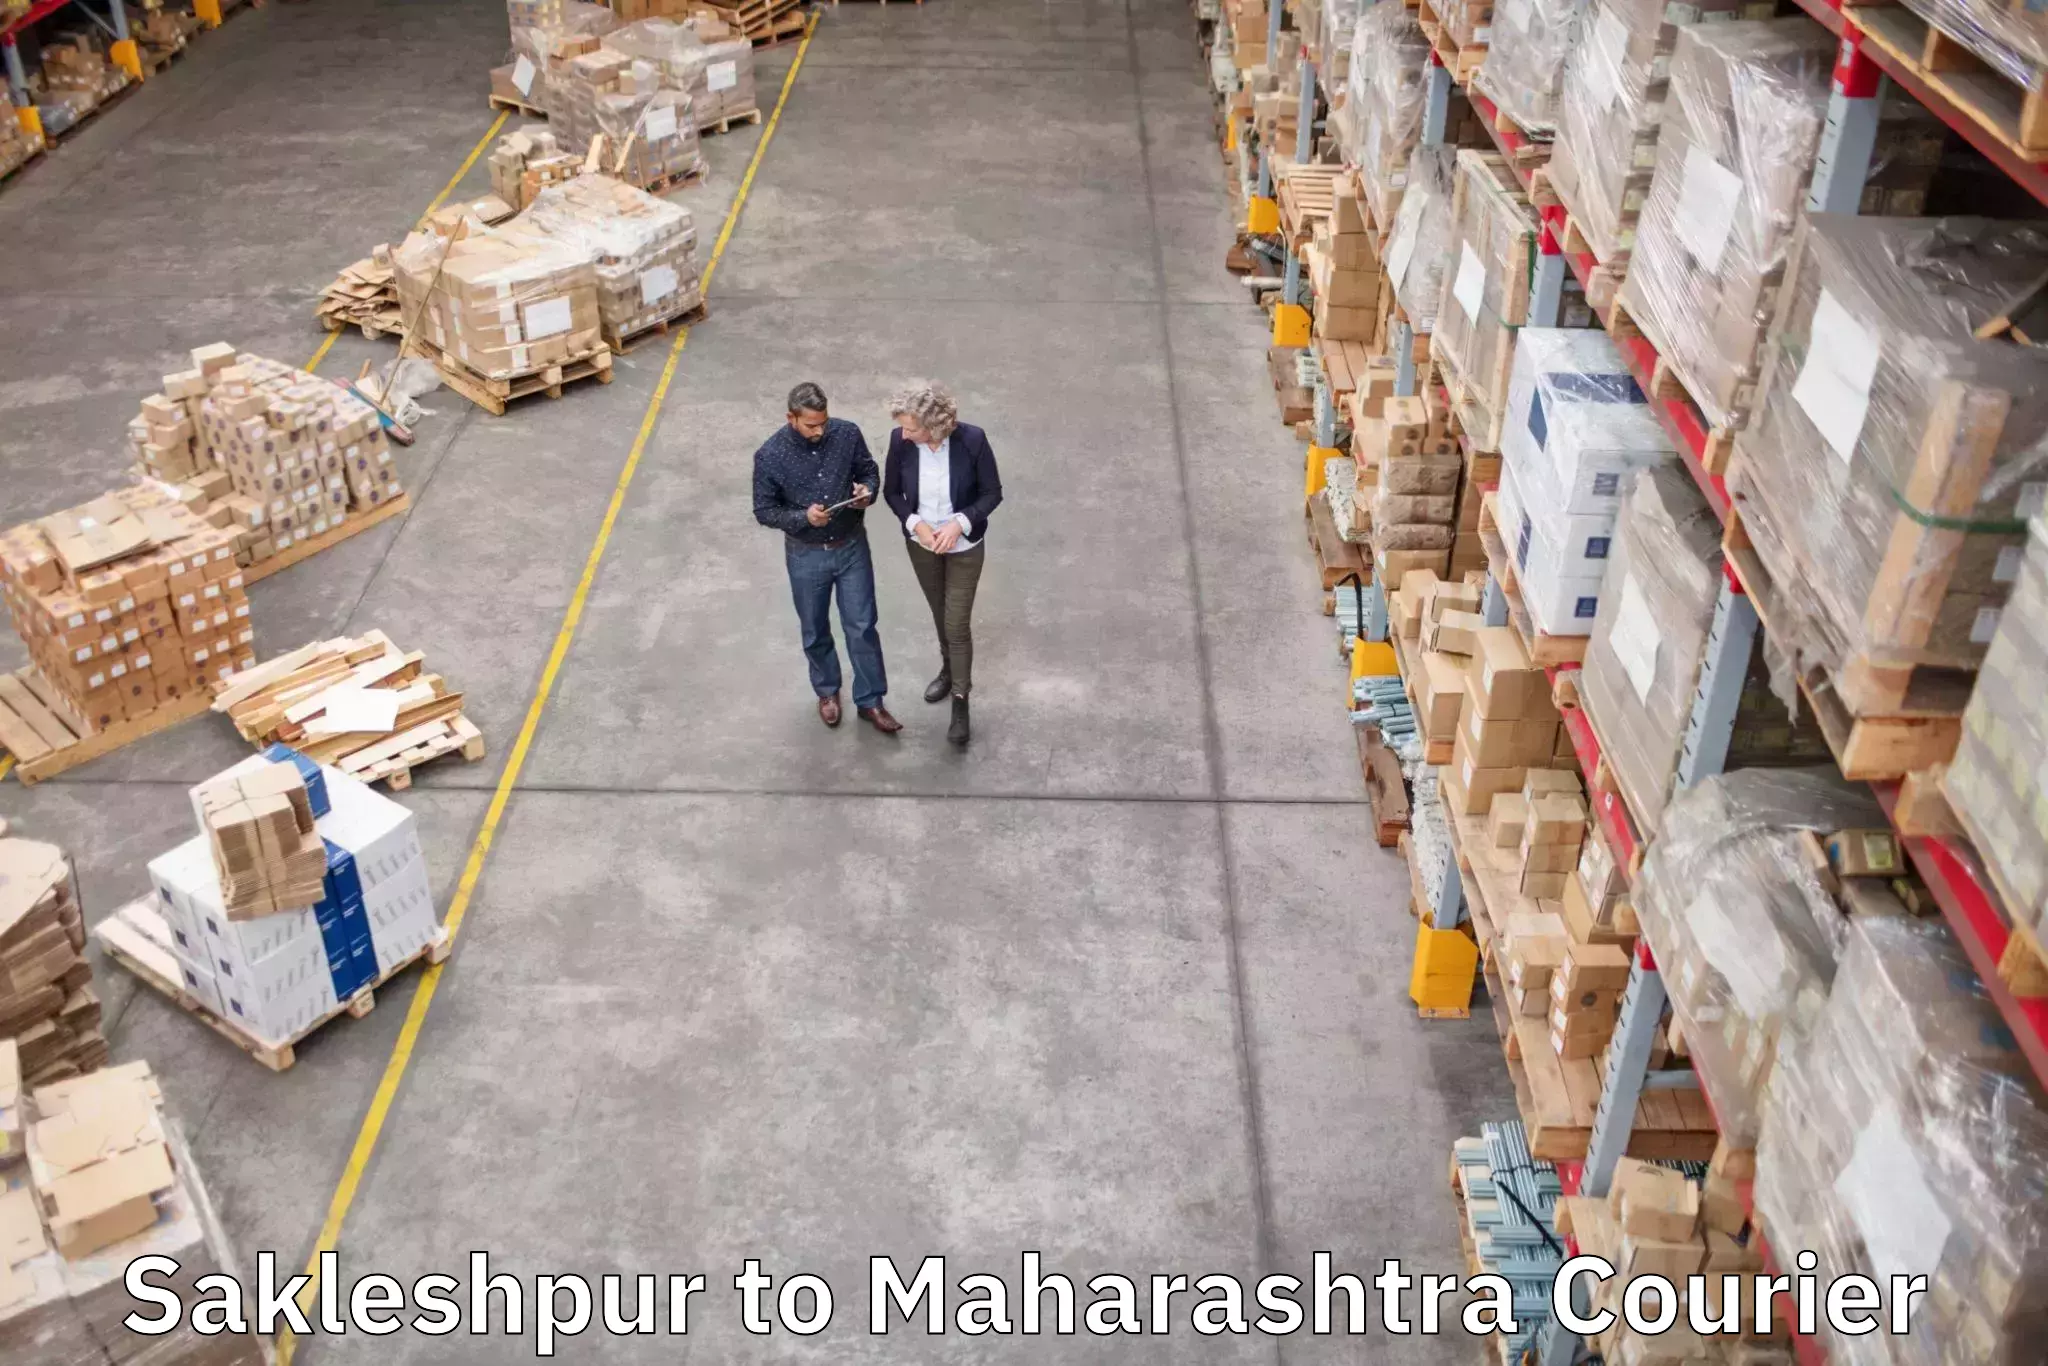 Luggage shipping service Sakleshpur to Maharashtra